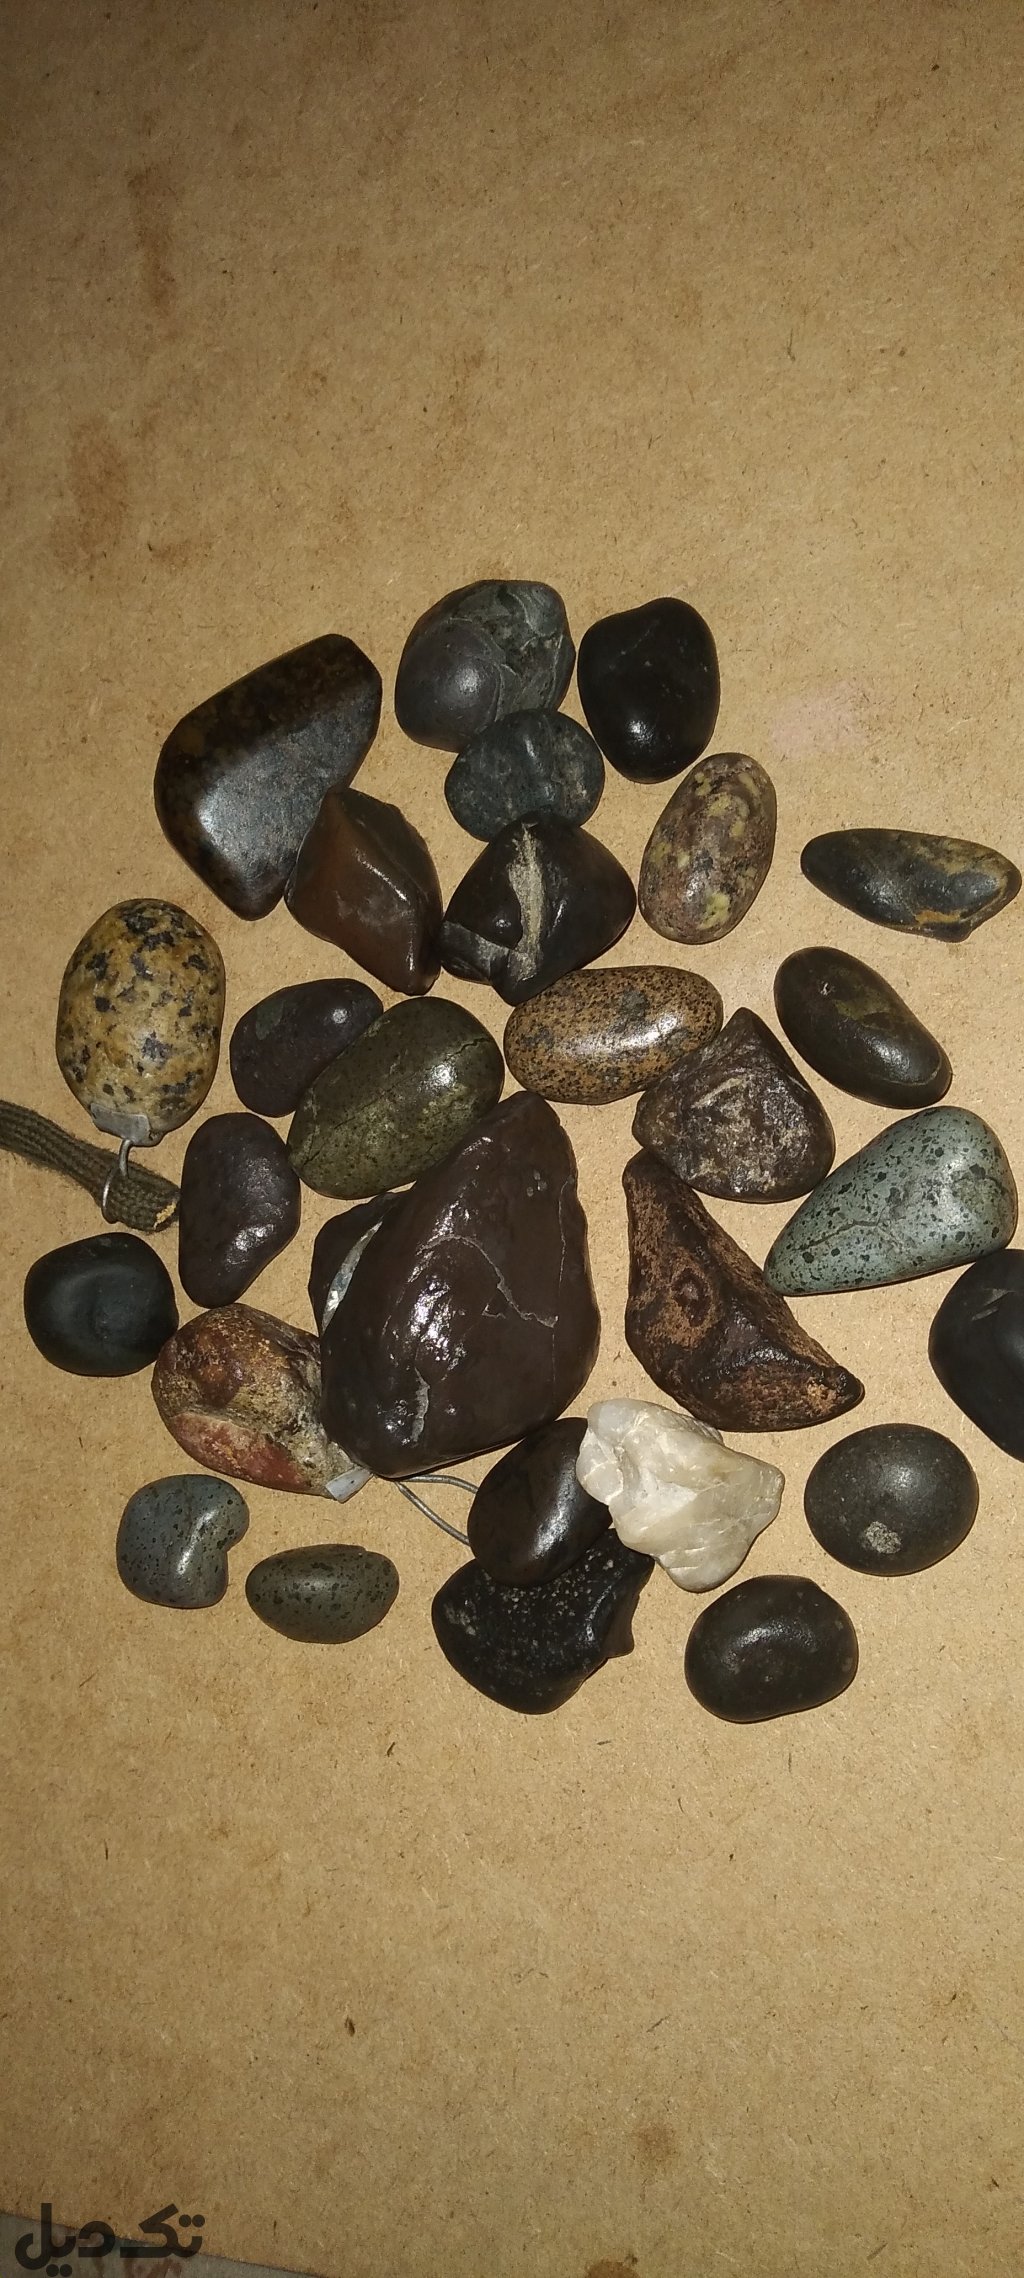 سنگهای قیمتی